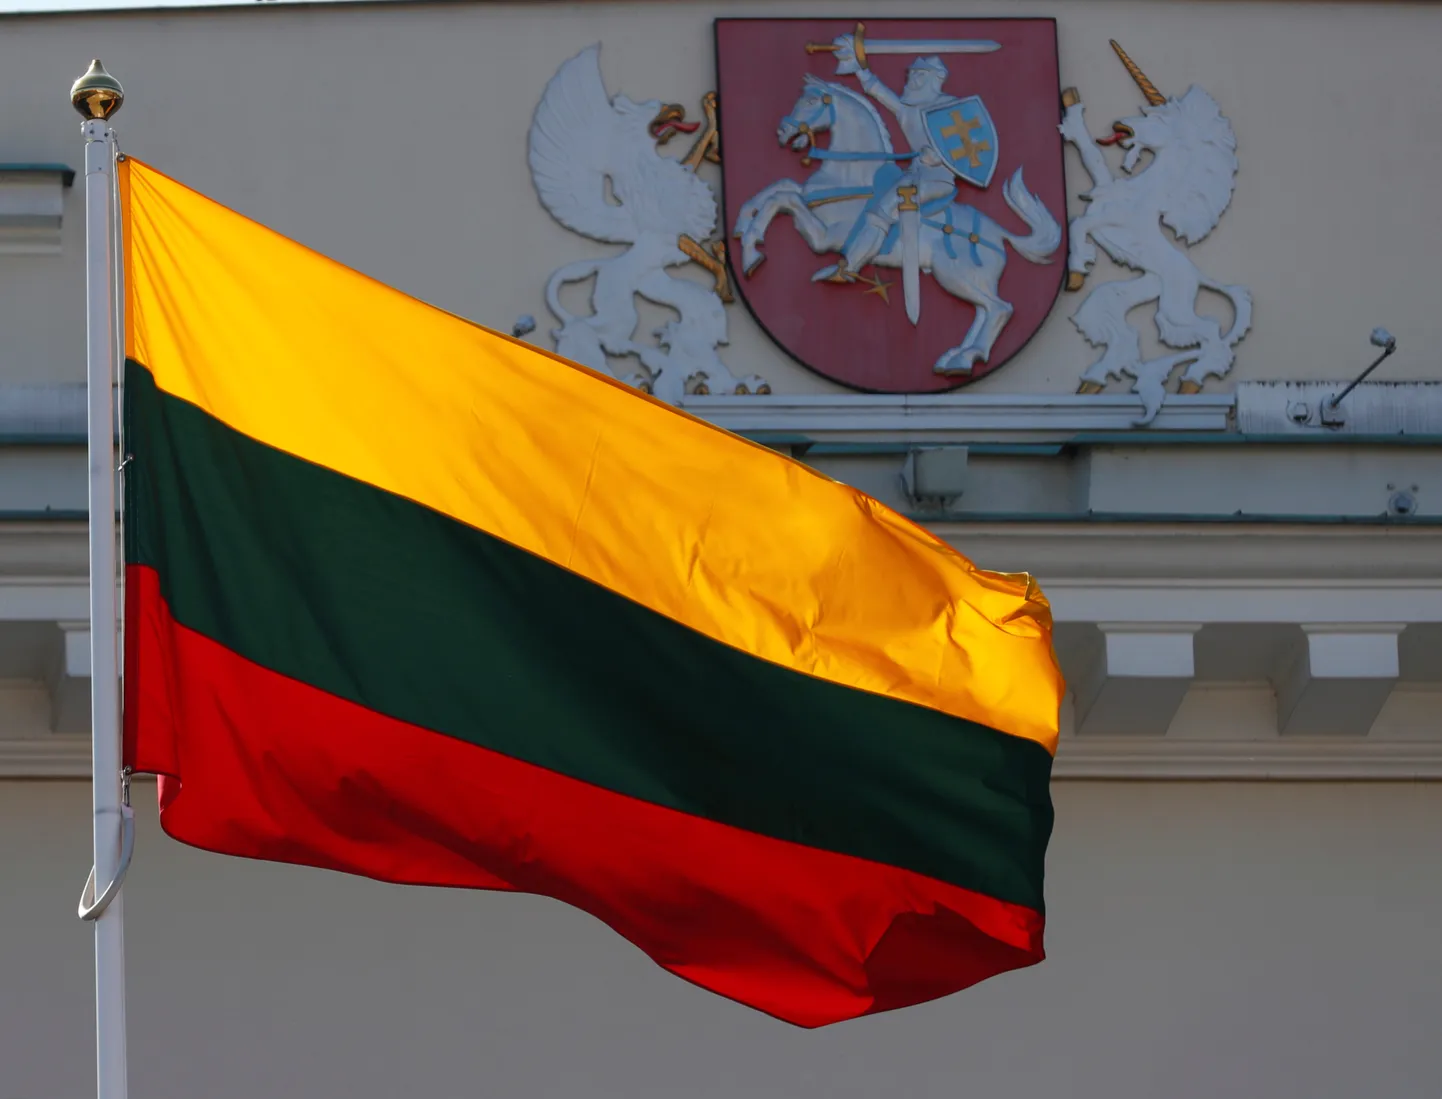 Kui tänavu kasvab Leedu majandus kaks ja Läti majandus 1,2 protsenti, siis Eestis on oodata majanduskasvu üheprotsendilist kukkumist.